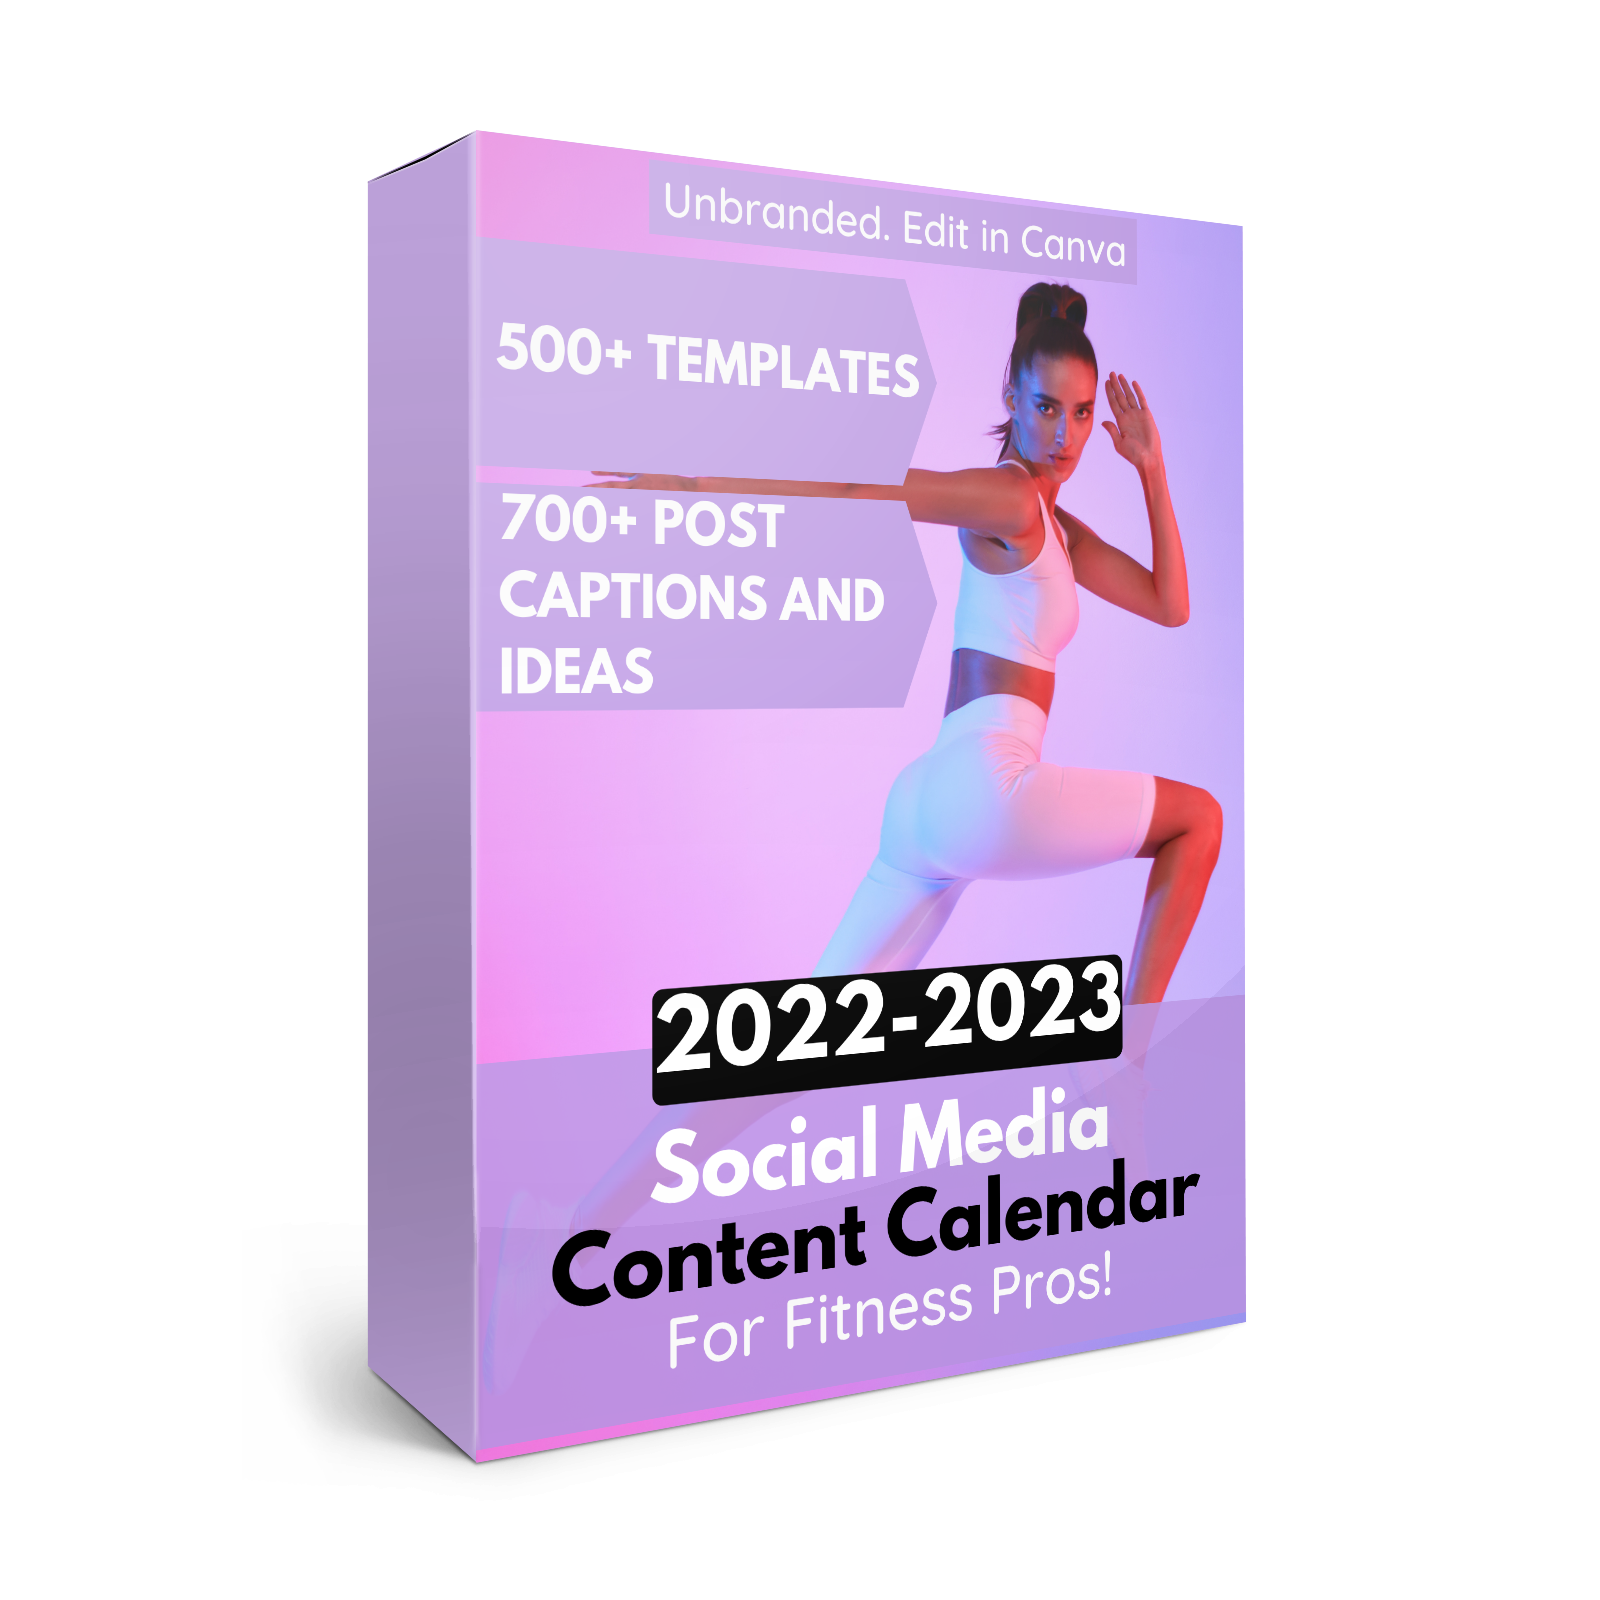 social-media-calendar-2022-23-fitwell-content